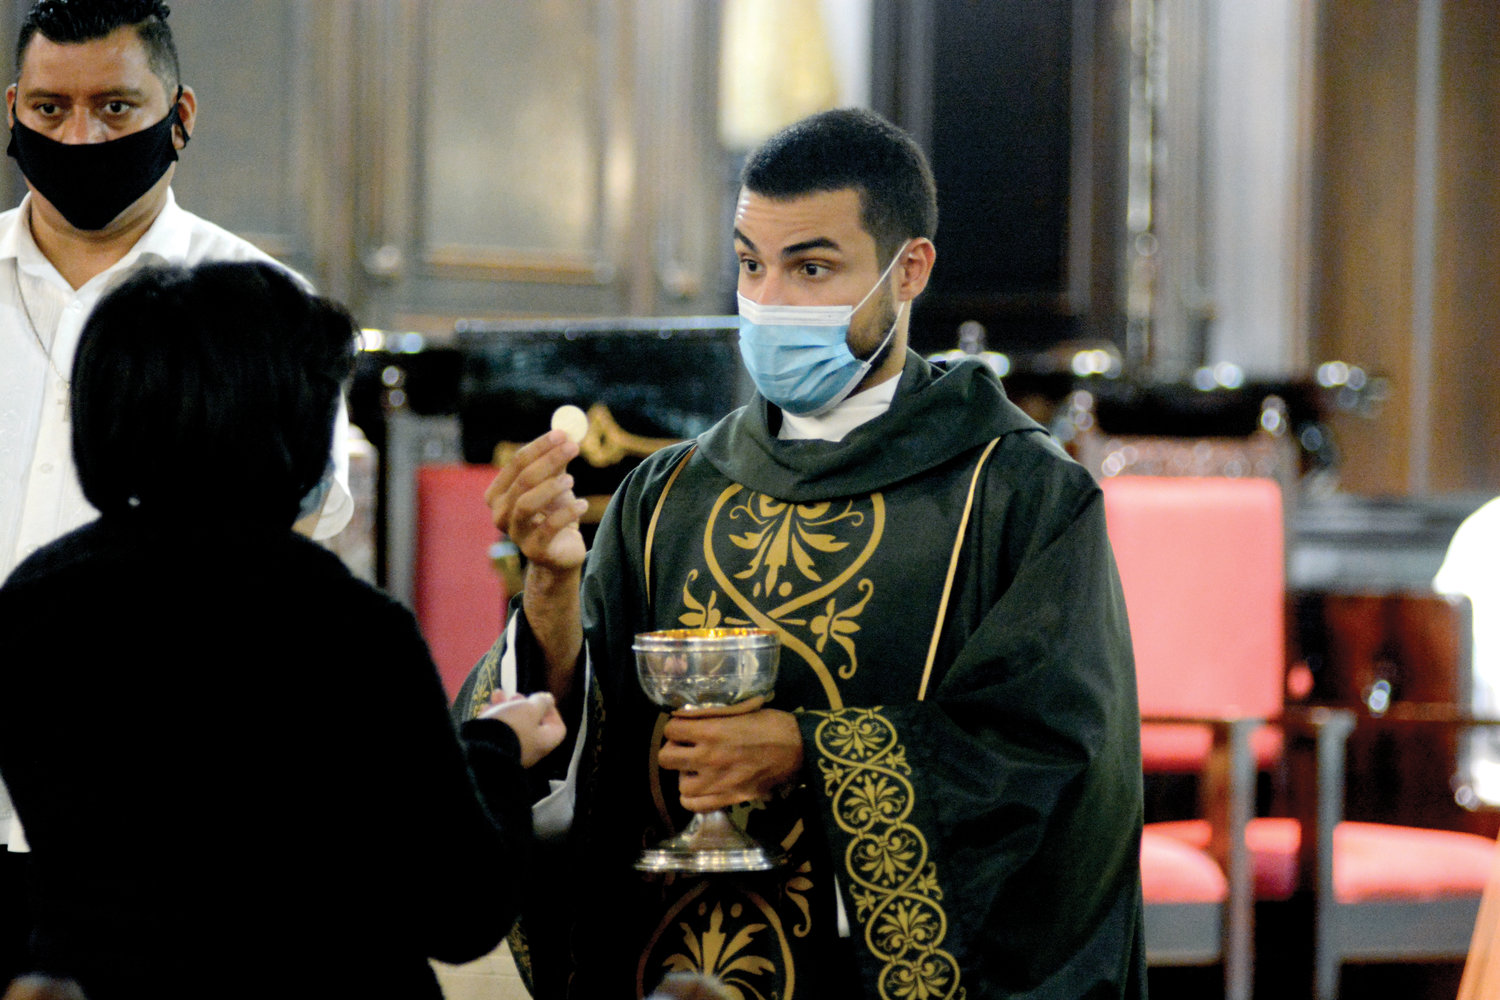 El padre Orlando Rodríguez Jr., Sch. P., distribuye la eucaristía durante una misa matutina celebrada el 13 de septiembre en la parroquia de la Anunciación en West Harlem.